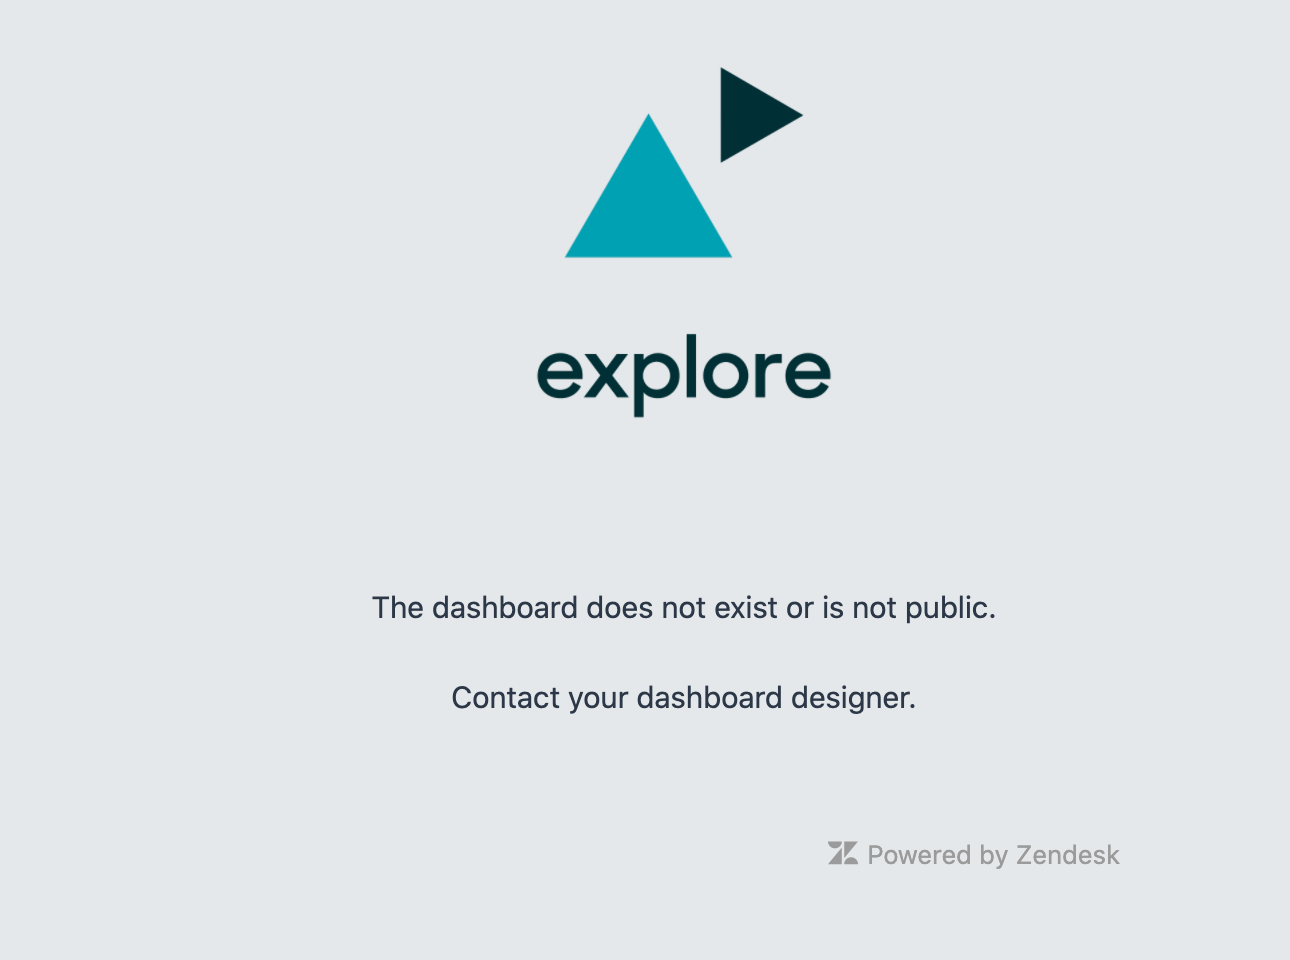 Explore のエラー メッセージ - ダッシュボードが存在しないか、公開されていません。ダッシュボード デザイナーに連絡する